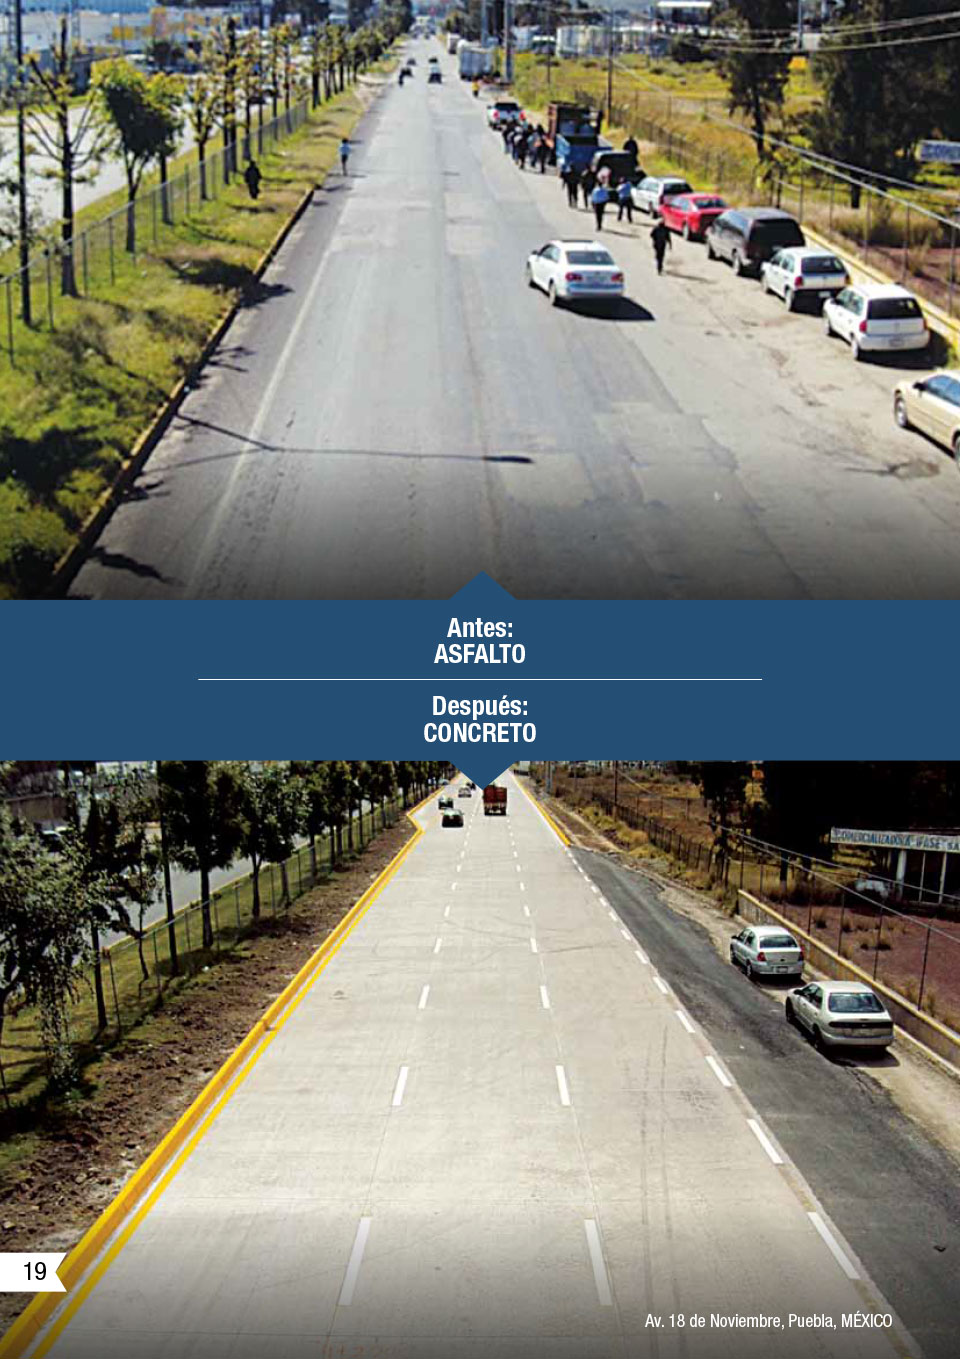 la imagen muestra un antes y despues de un camino con asfalto y despues con concreto